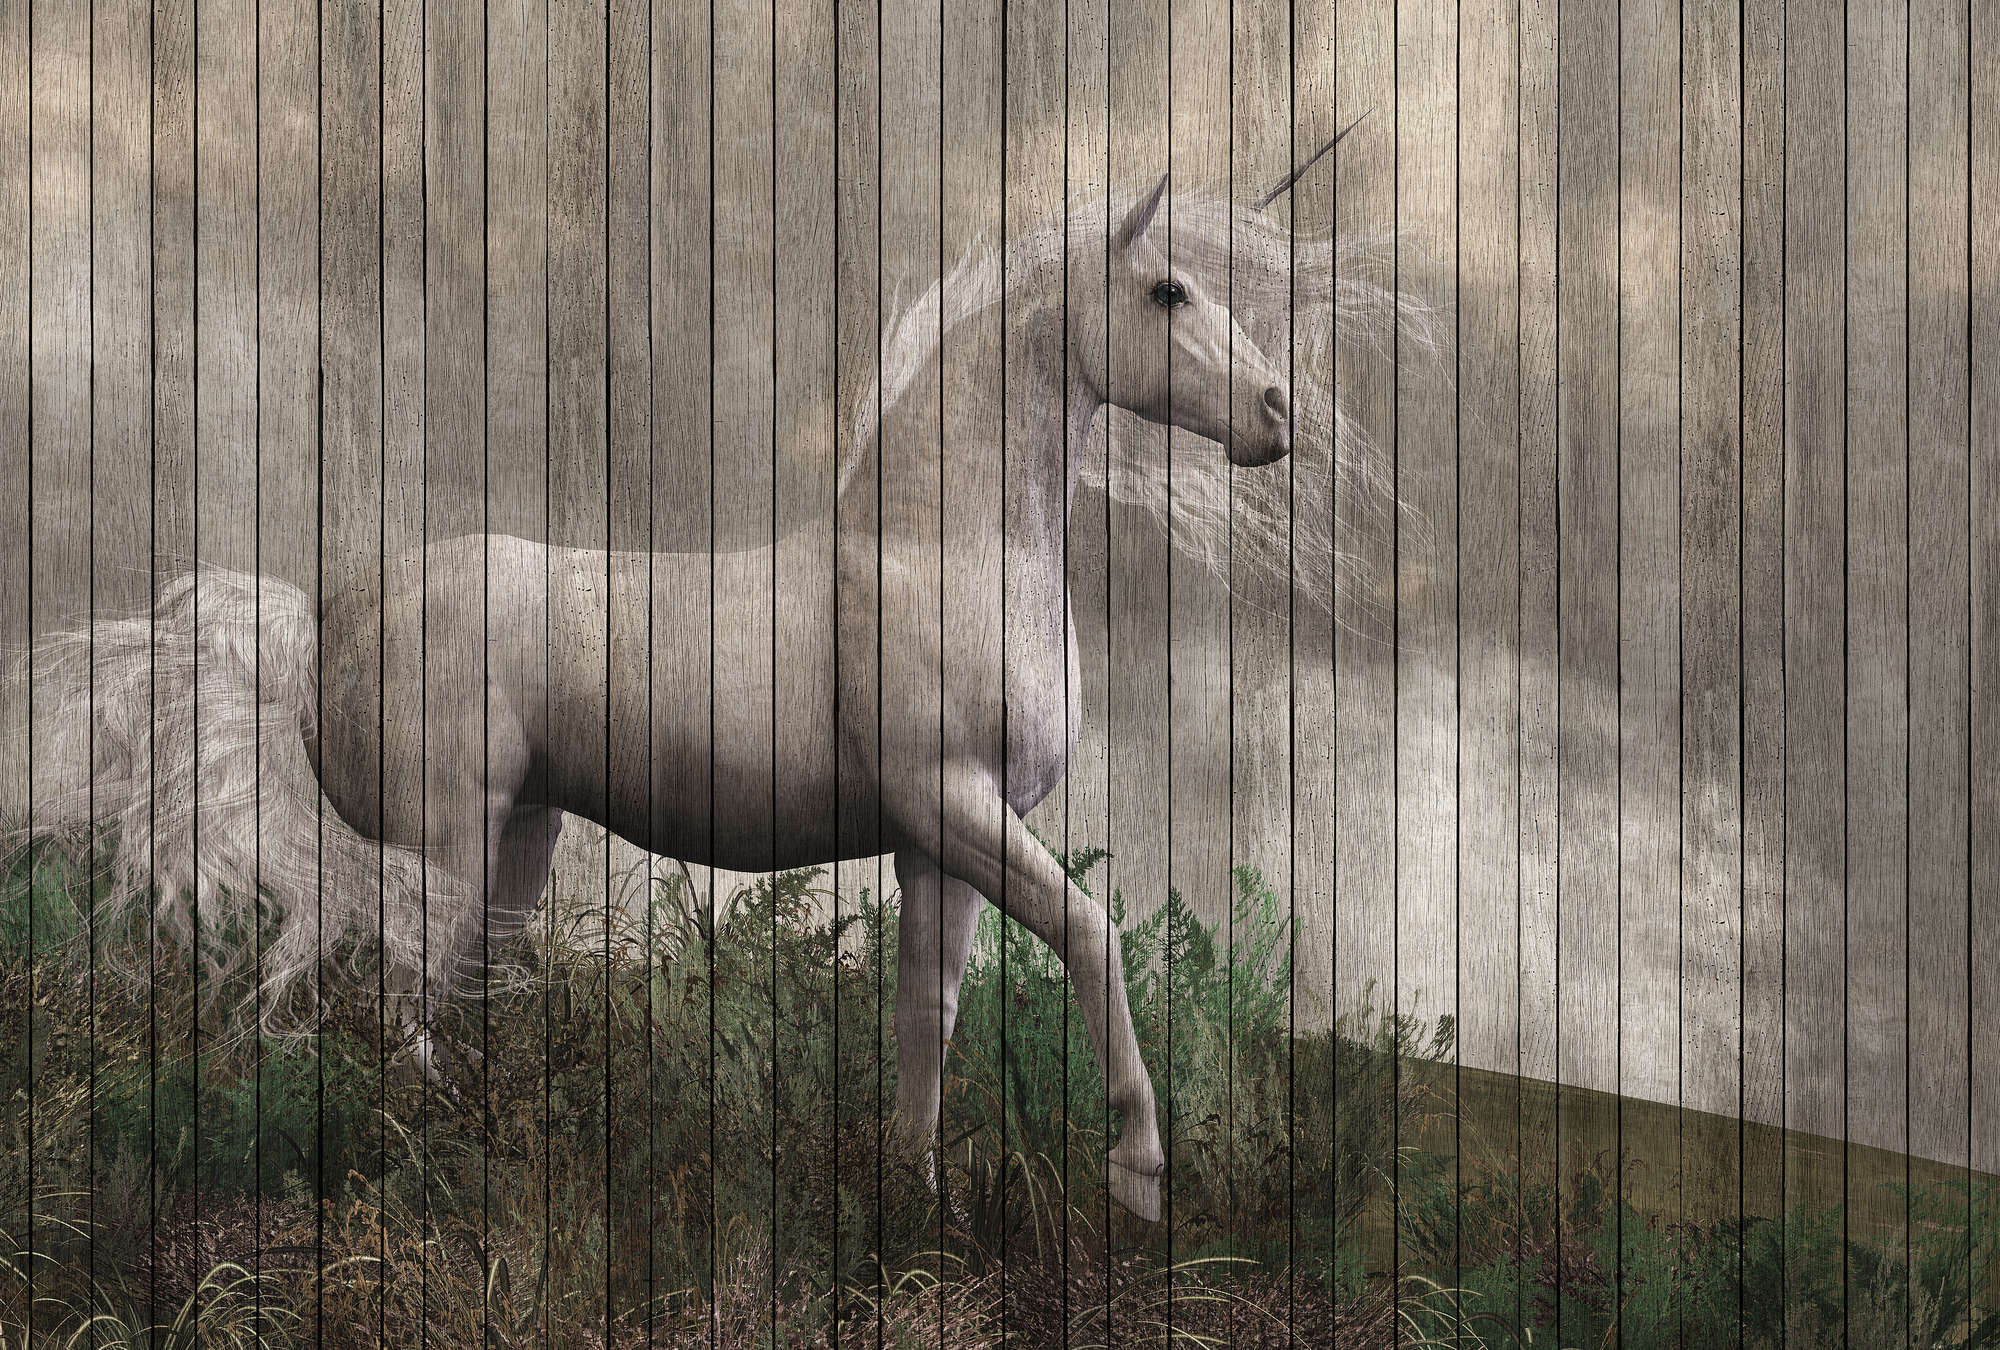             Fantasy 3 - Papier peint licorne avec aspect planche de bois - beige, marron | nacré intissé lisse
        